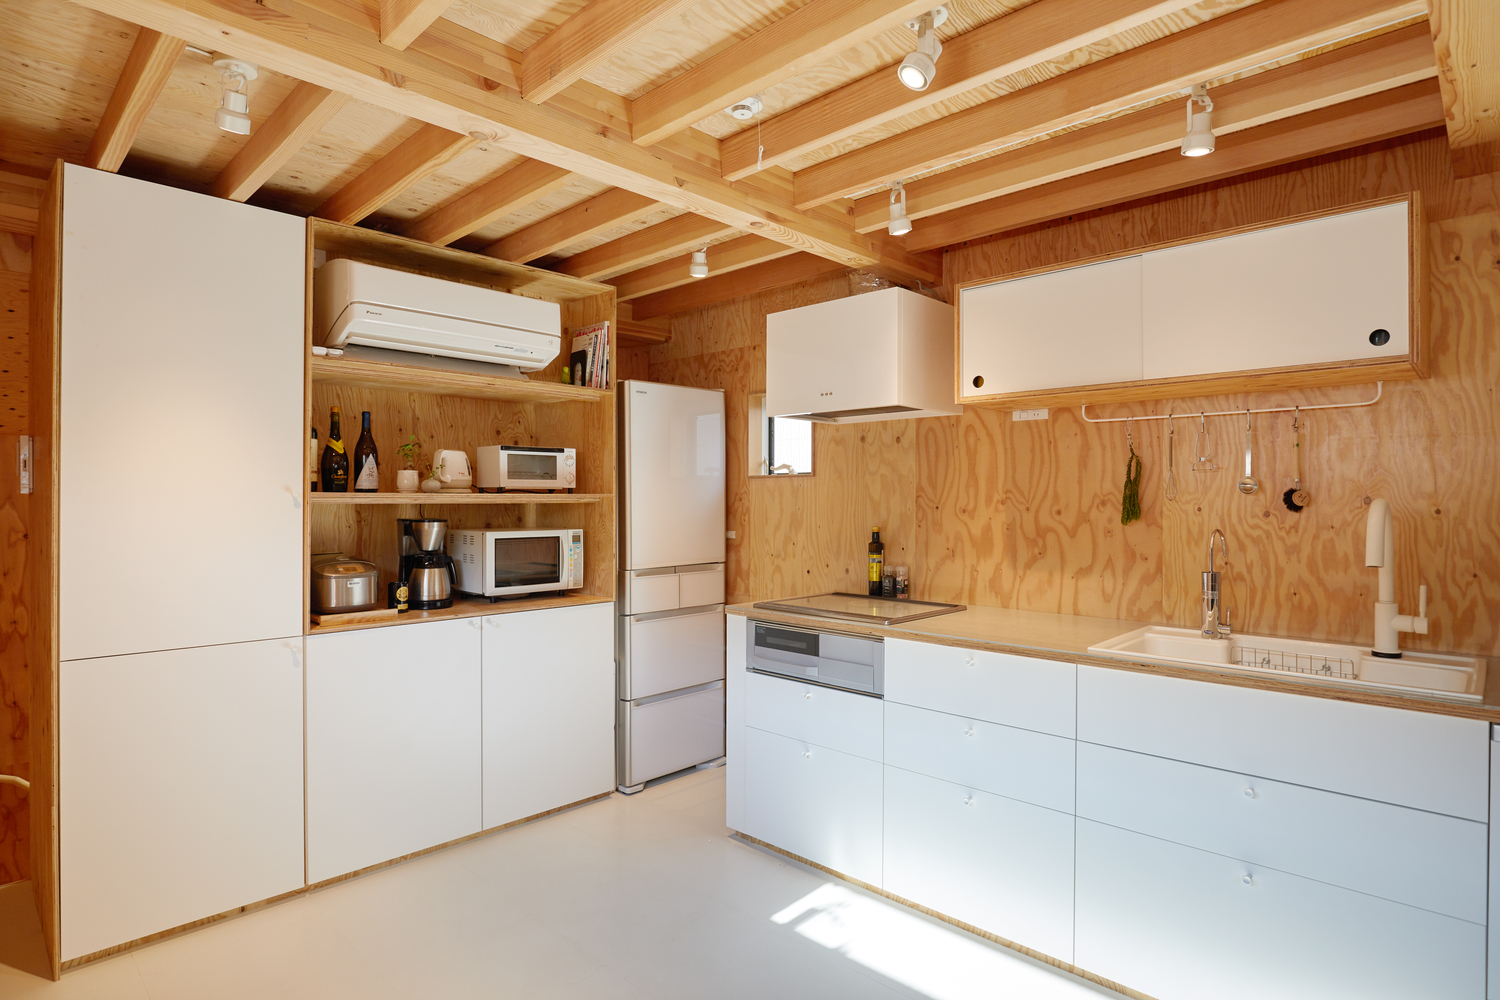 Hình ảnh phòng bếp với hệ tủ màu trắng, trần lộ dầm gỗ